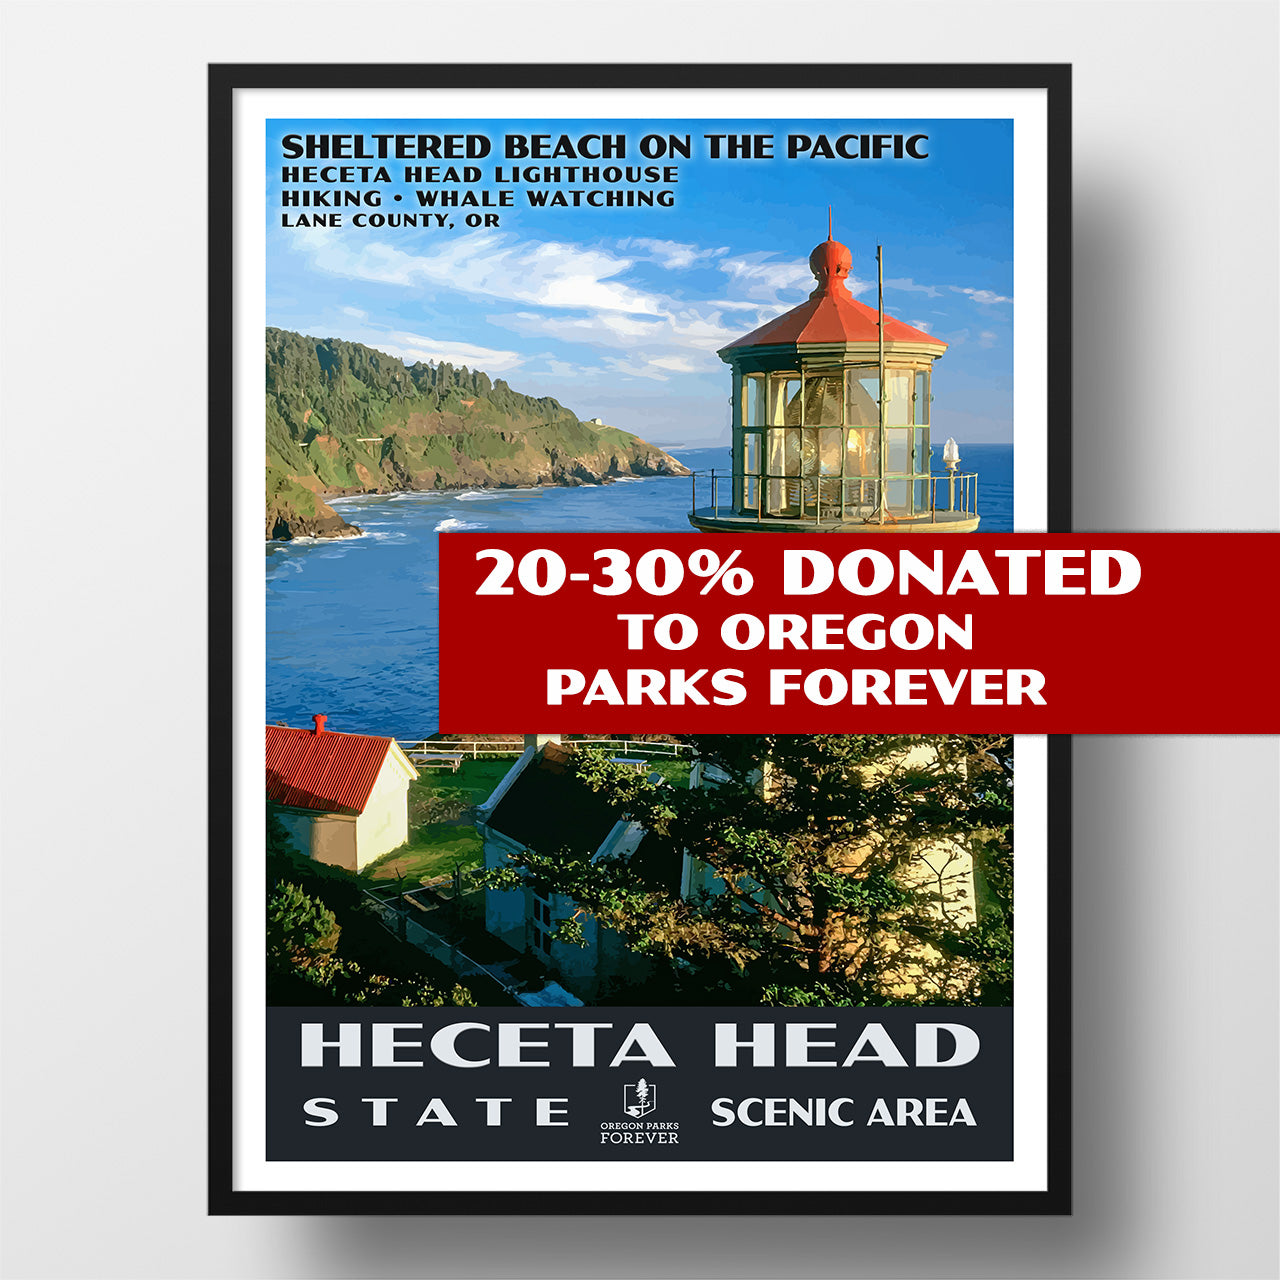 Heceta Head State Scenic Area poster